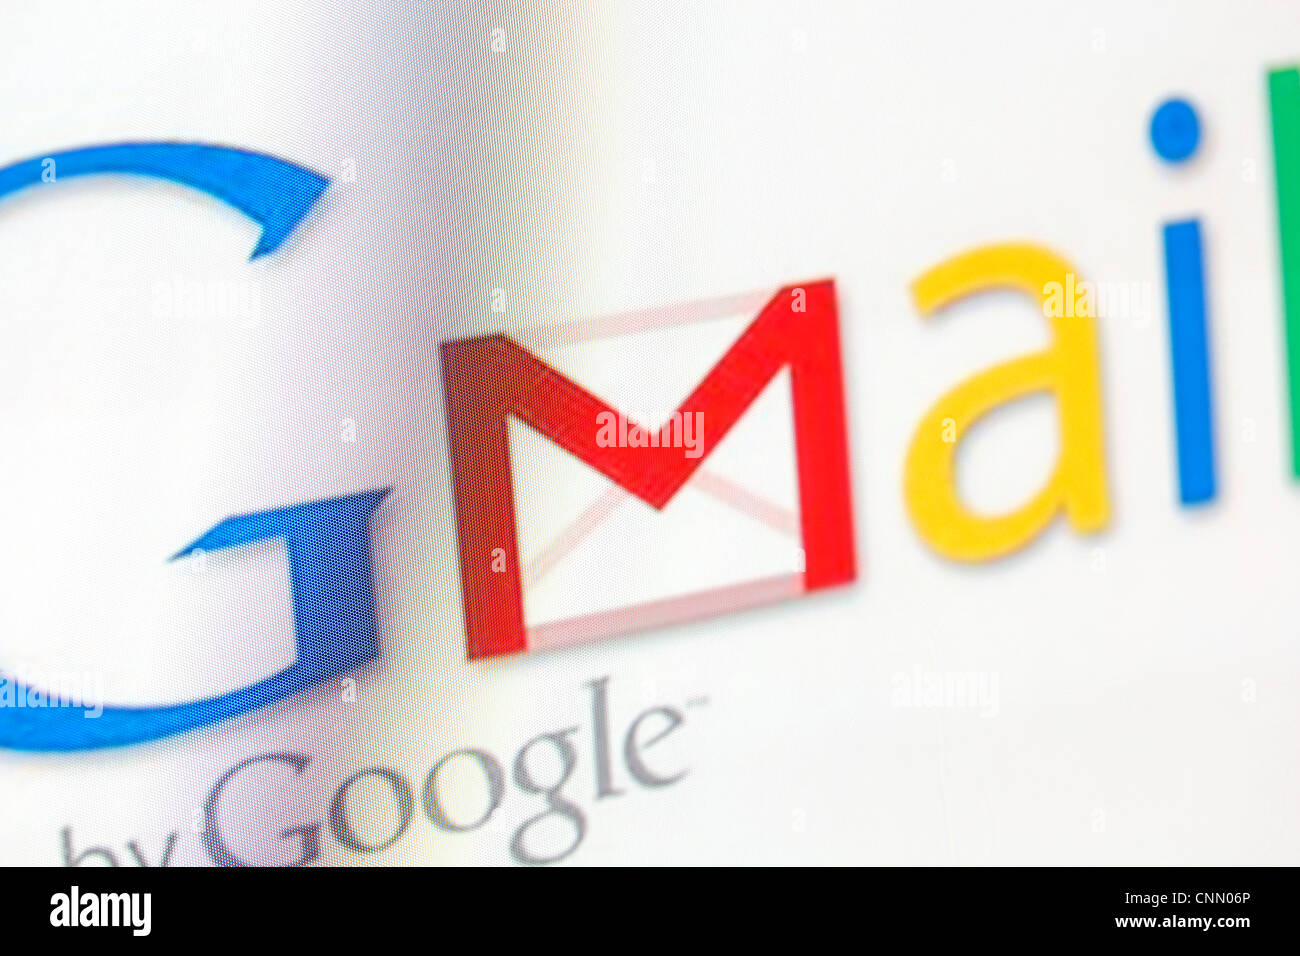 Logo Gmail sur un écran de surveillance Banque D'Images